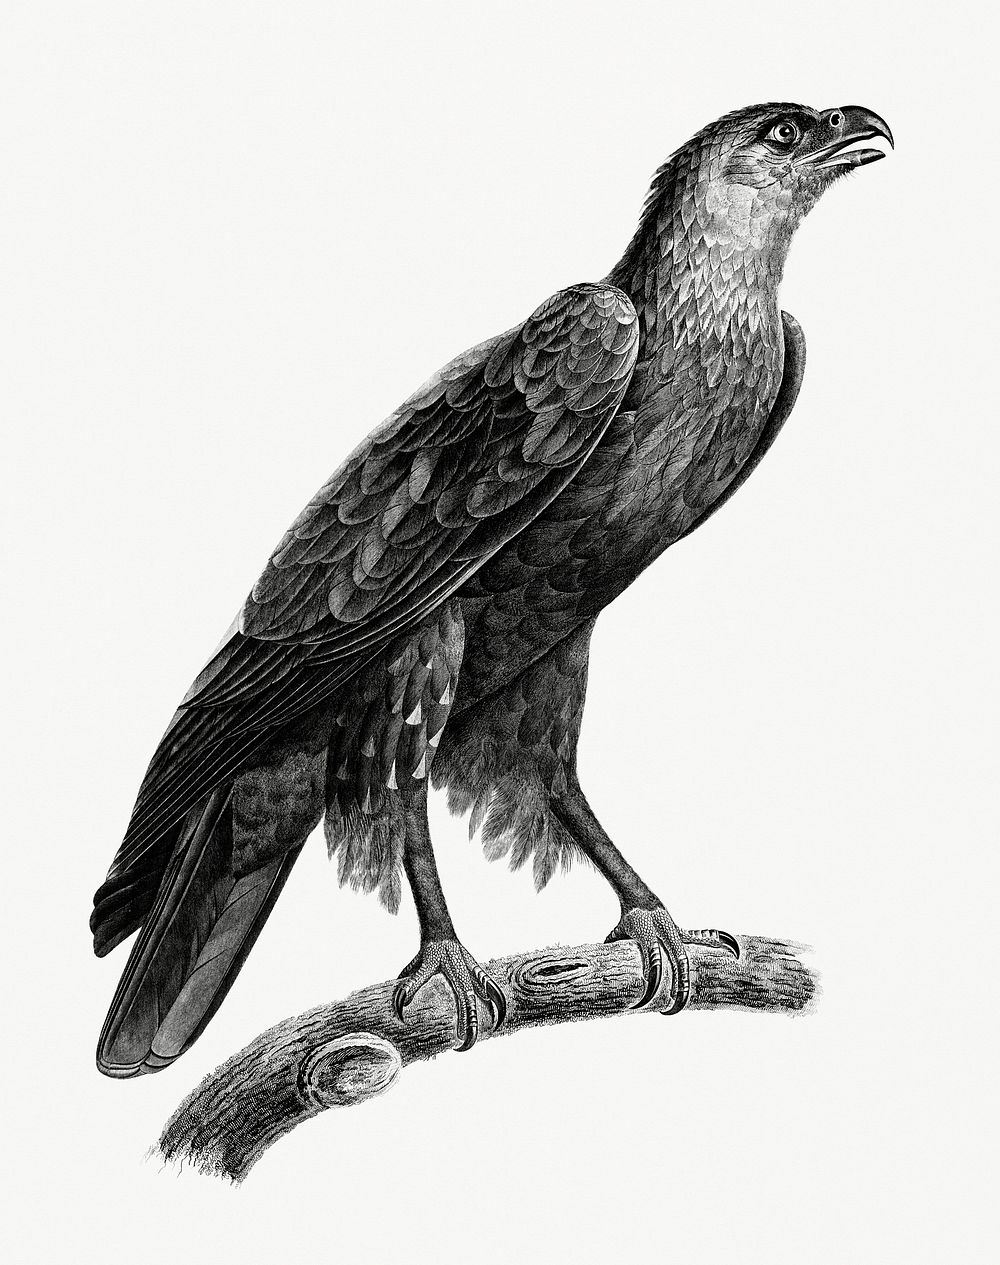 Vintage illustration of Greater spotted eagle